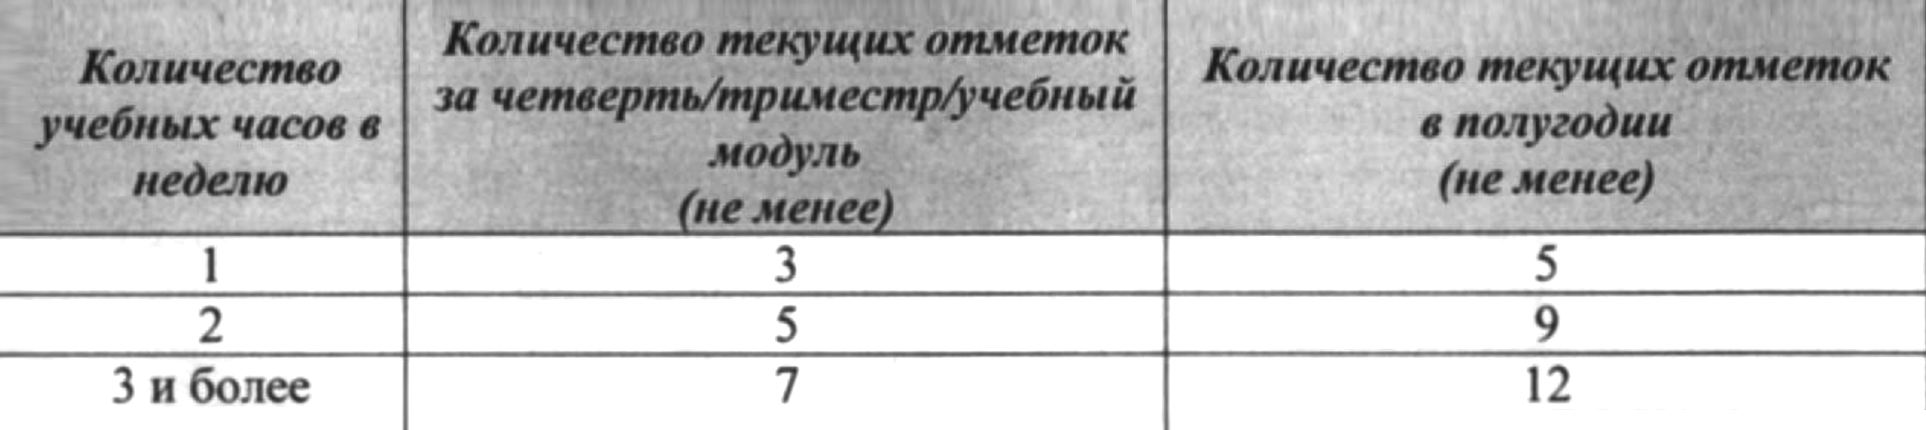 Пример того, сколько отметок в зависимости от количества уроков нужно получить в одной из московских школ, чтобы пройти промежуточную аттестацию по предмету. Источник: st.educom.ru